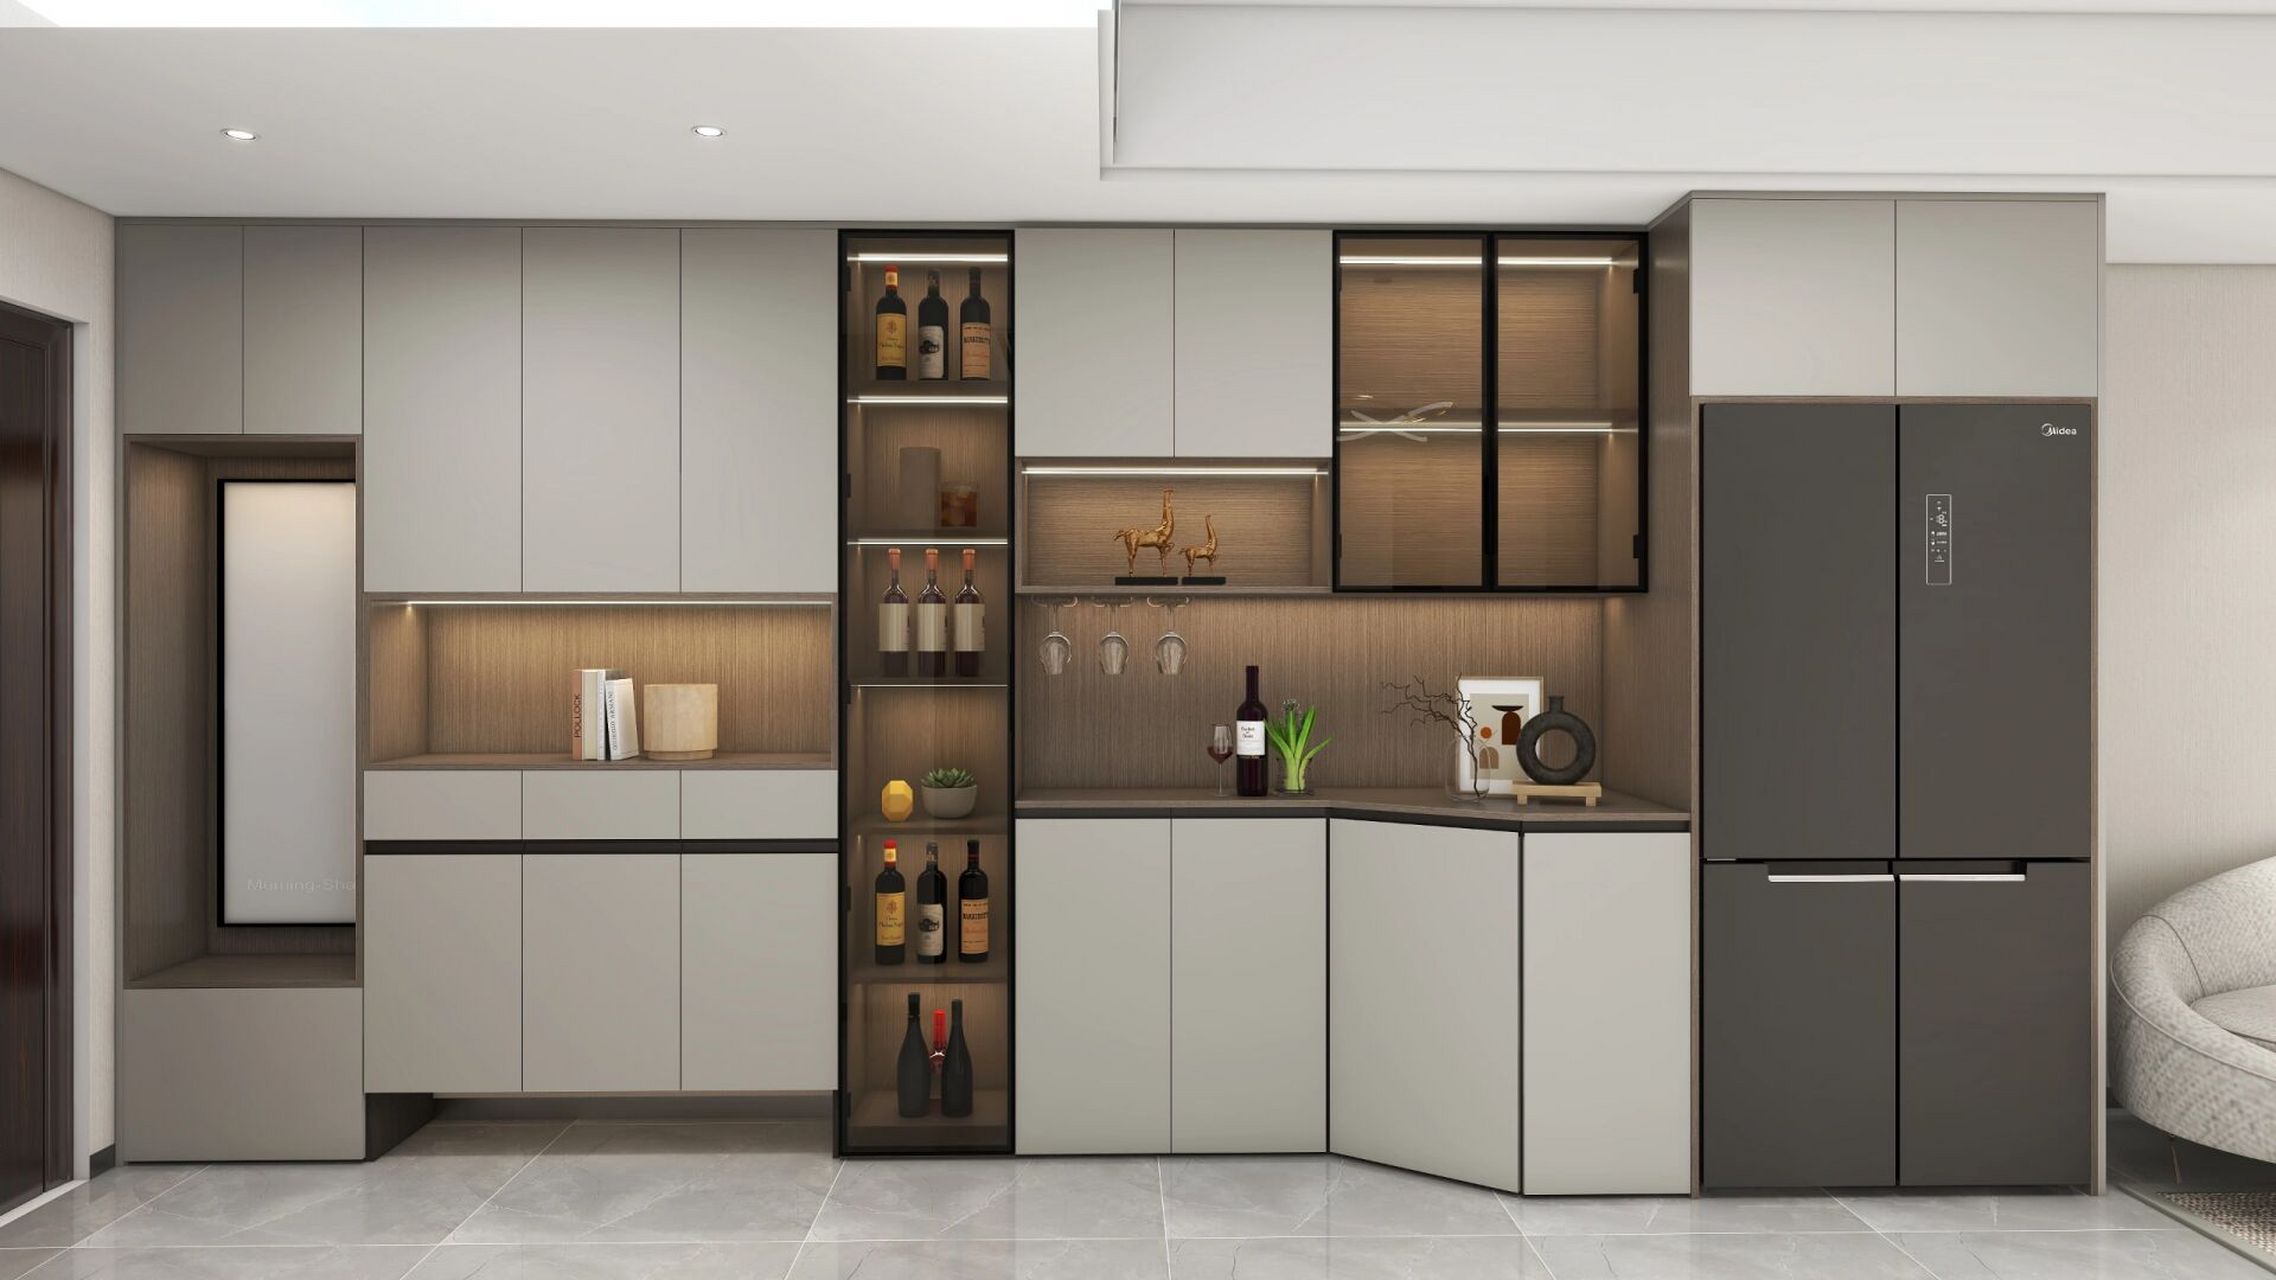 超实用的冰箱柜设计,鞋柜酒柜冰箱柜一体  本案例是将冰箱从厨房提